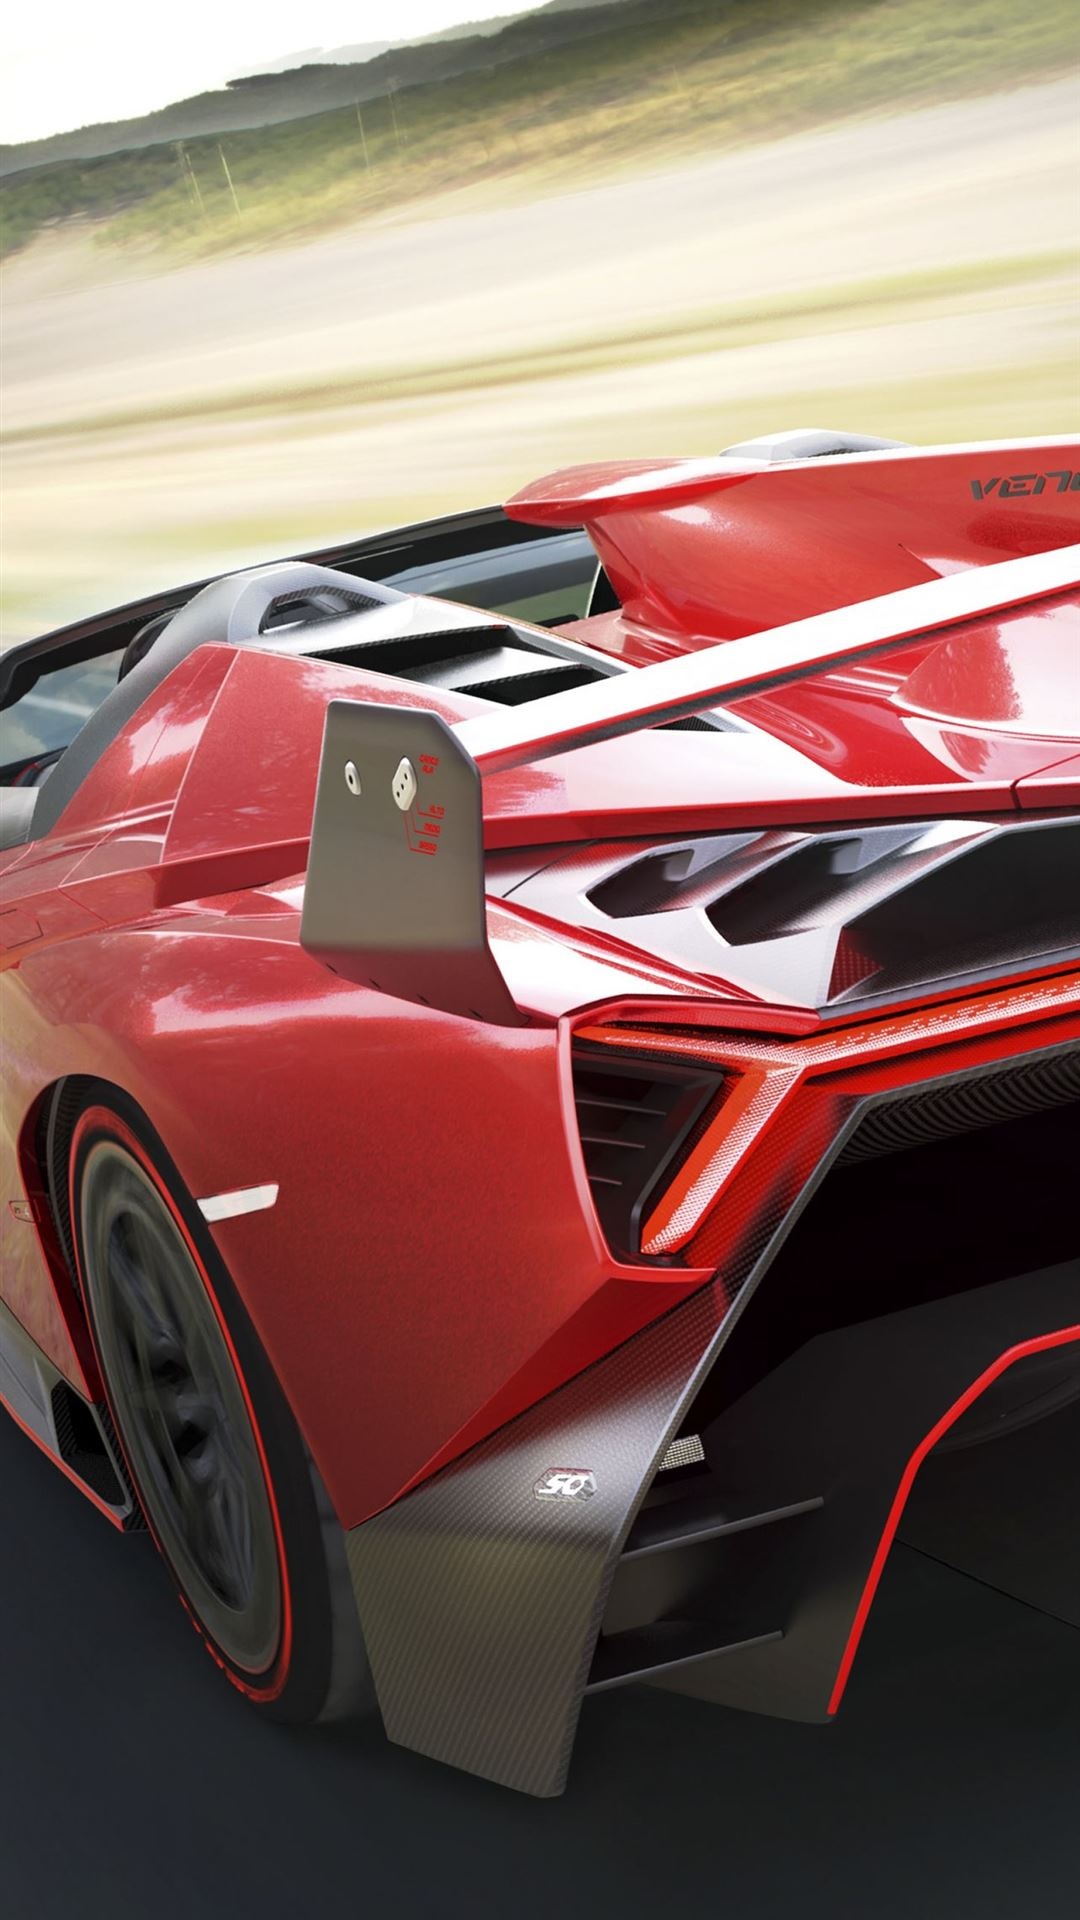 Lamborghini Veneno, Android wallpapers, iPhone wallpapers, Free download, 1080x1920 Full HD Phone